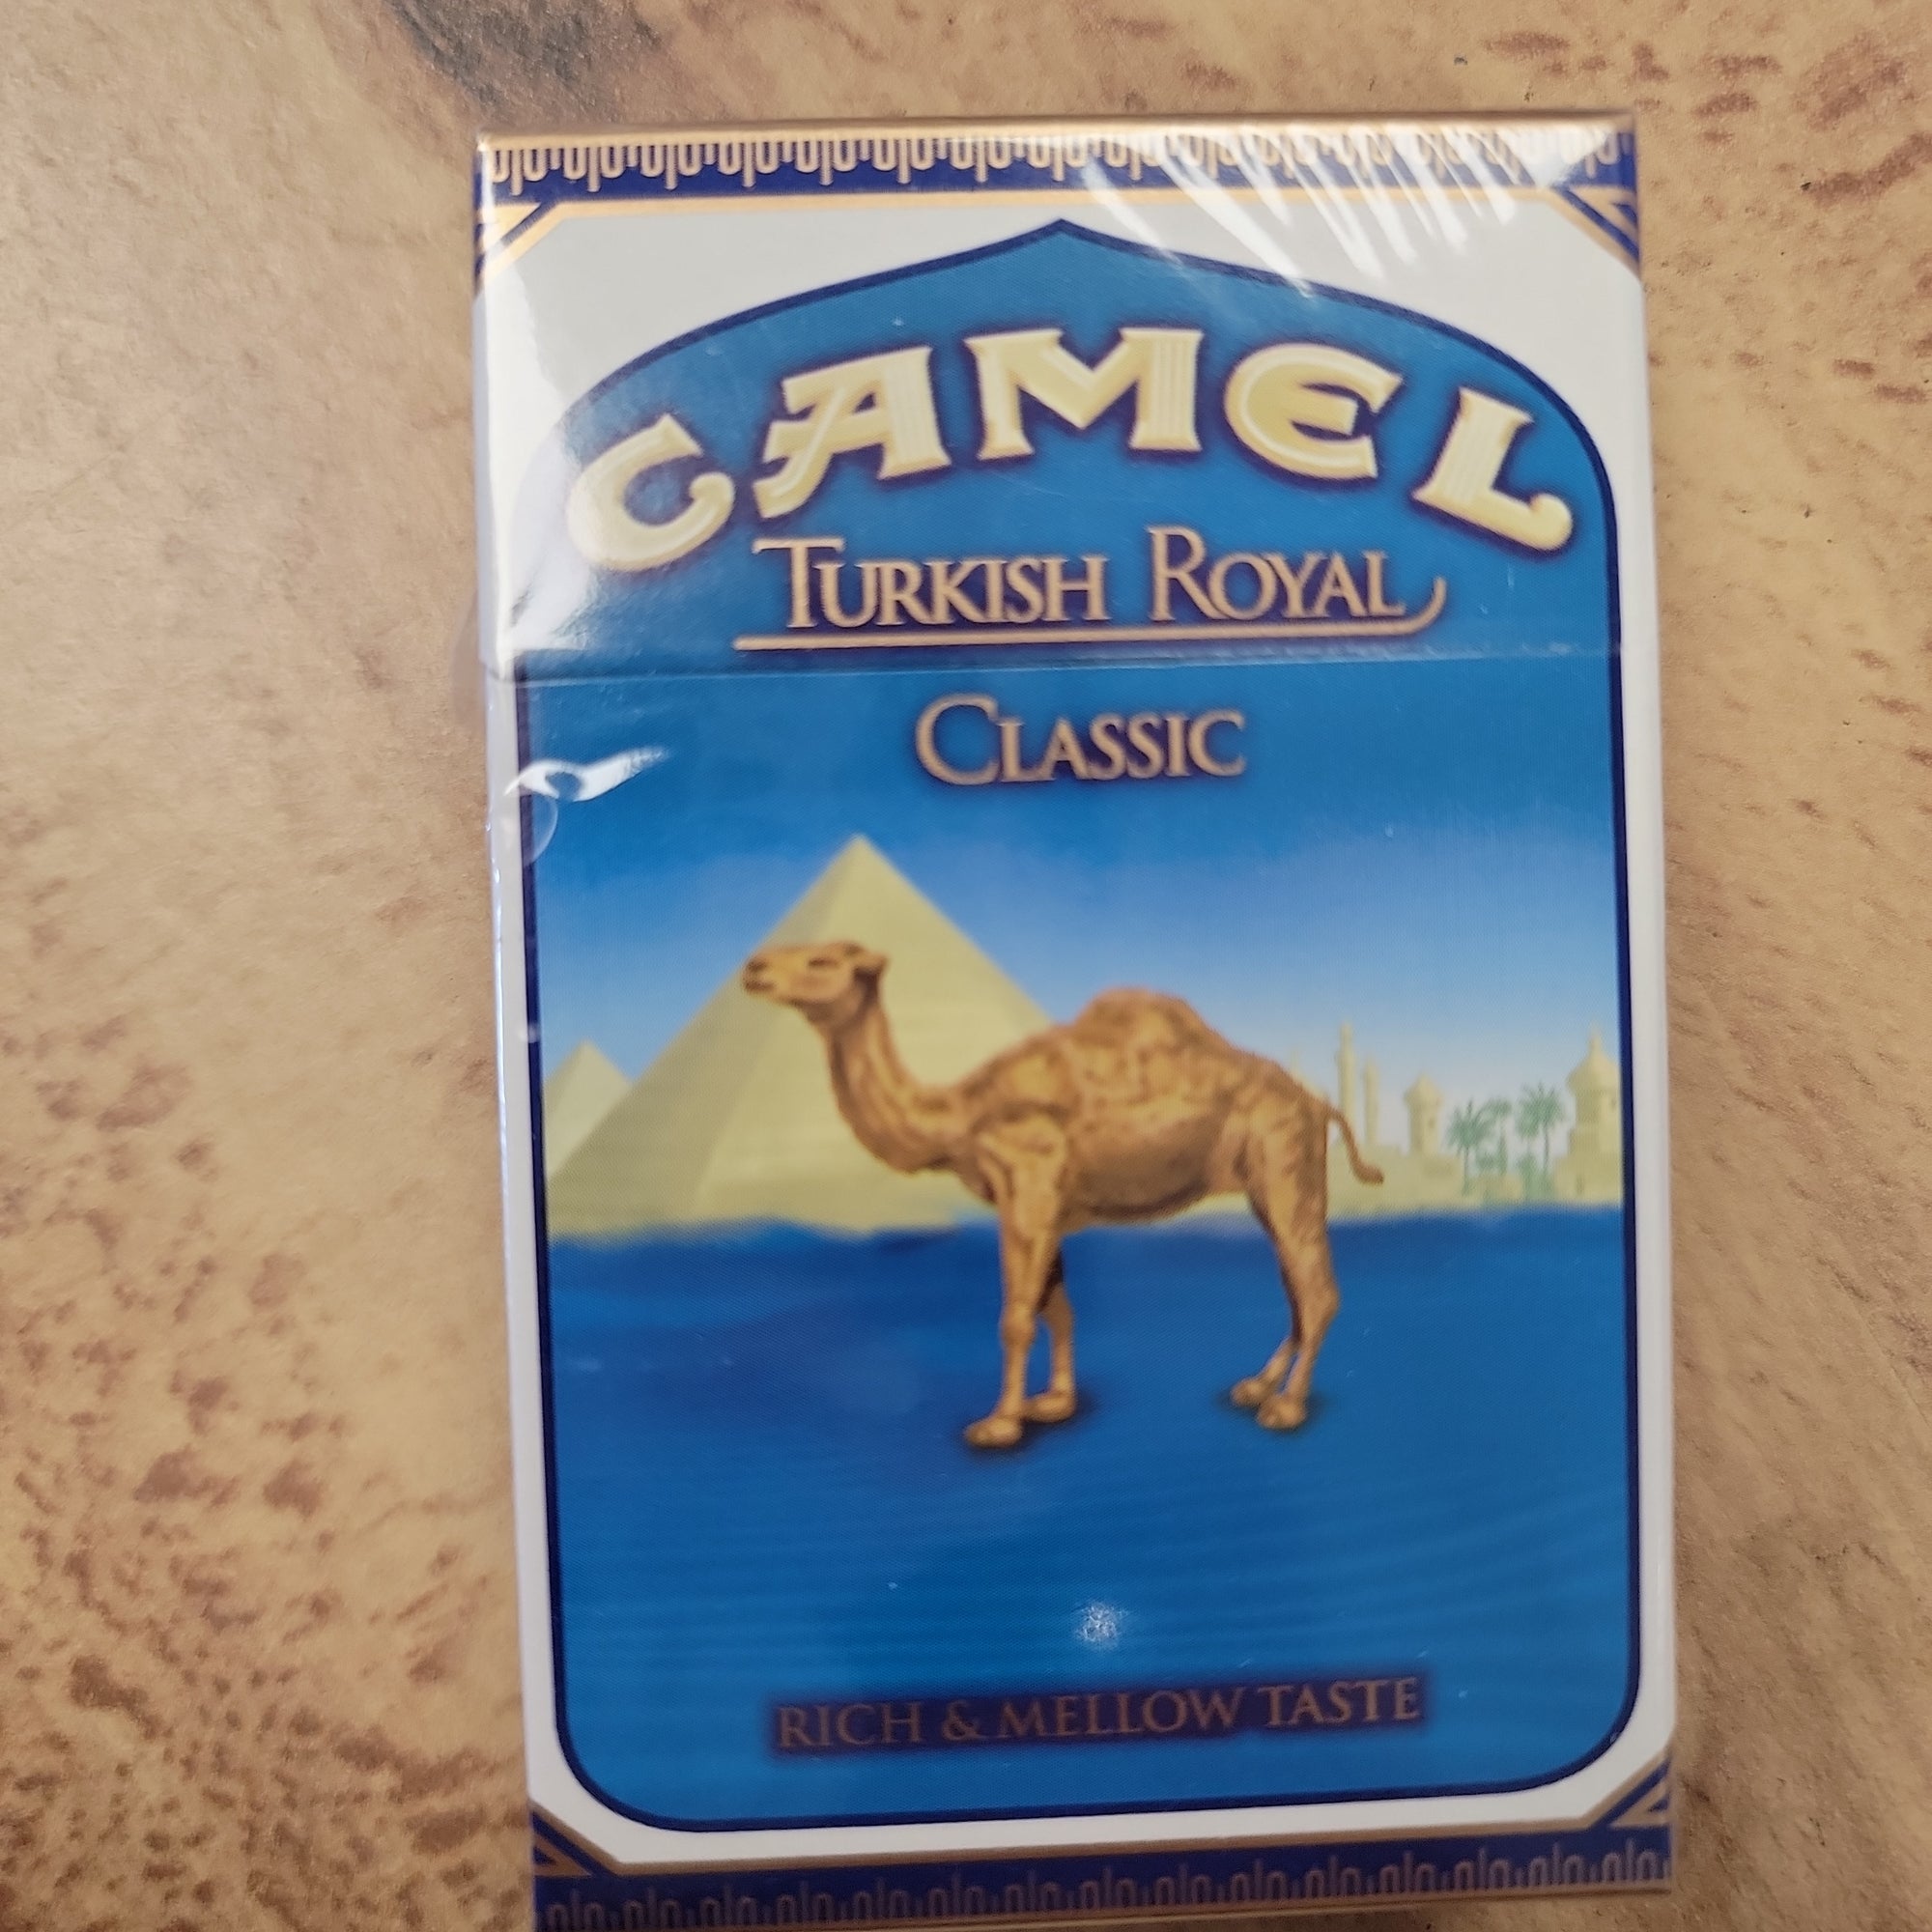 Camel turkish royal